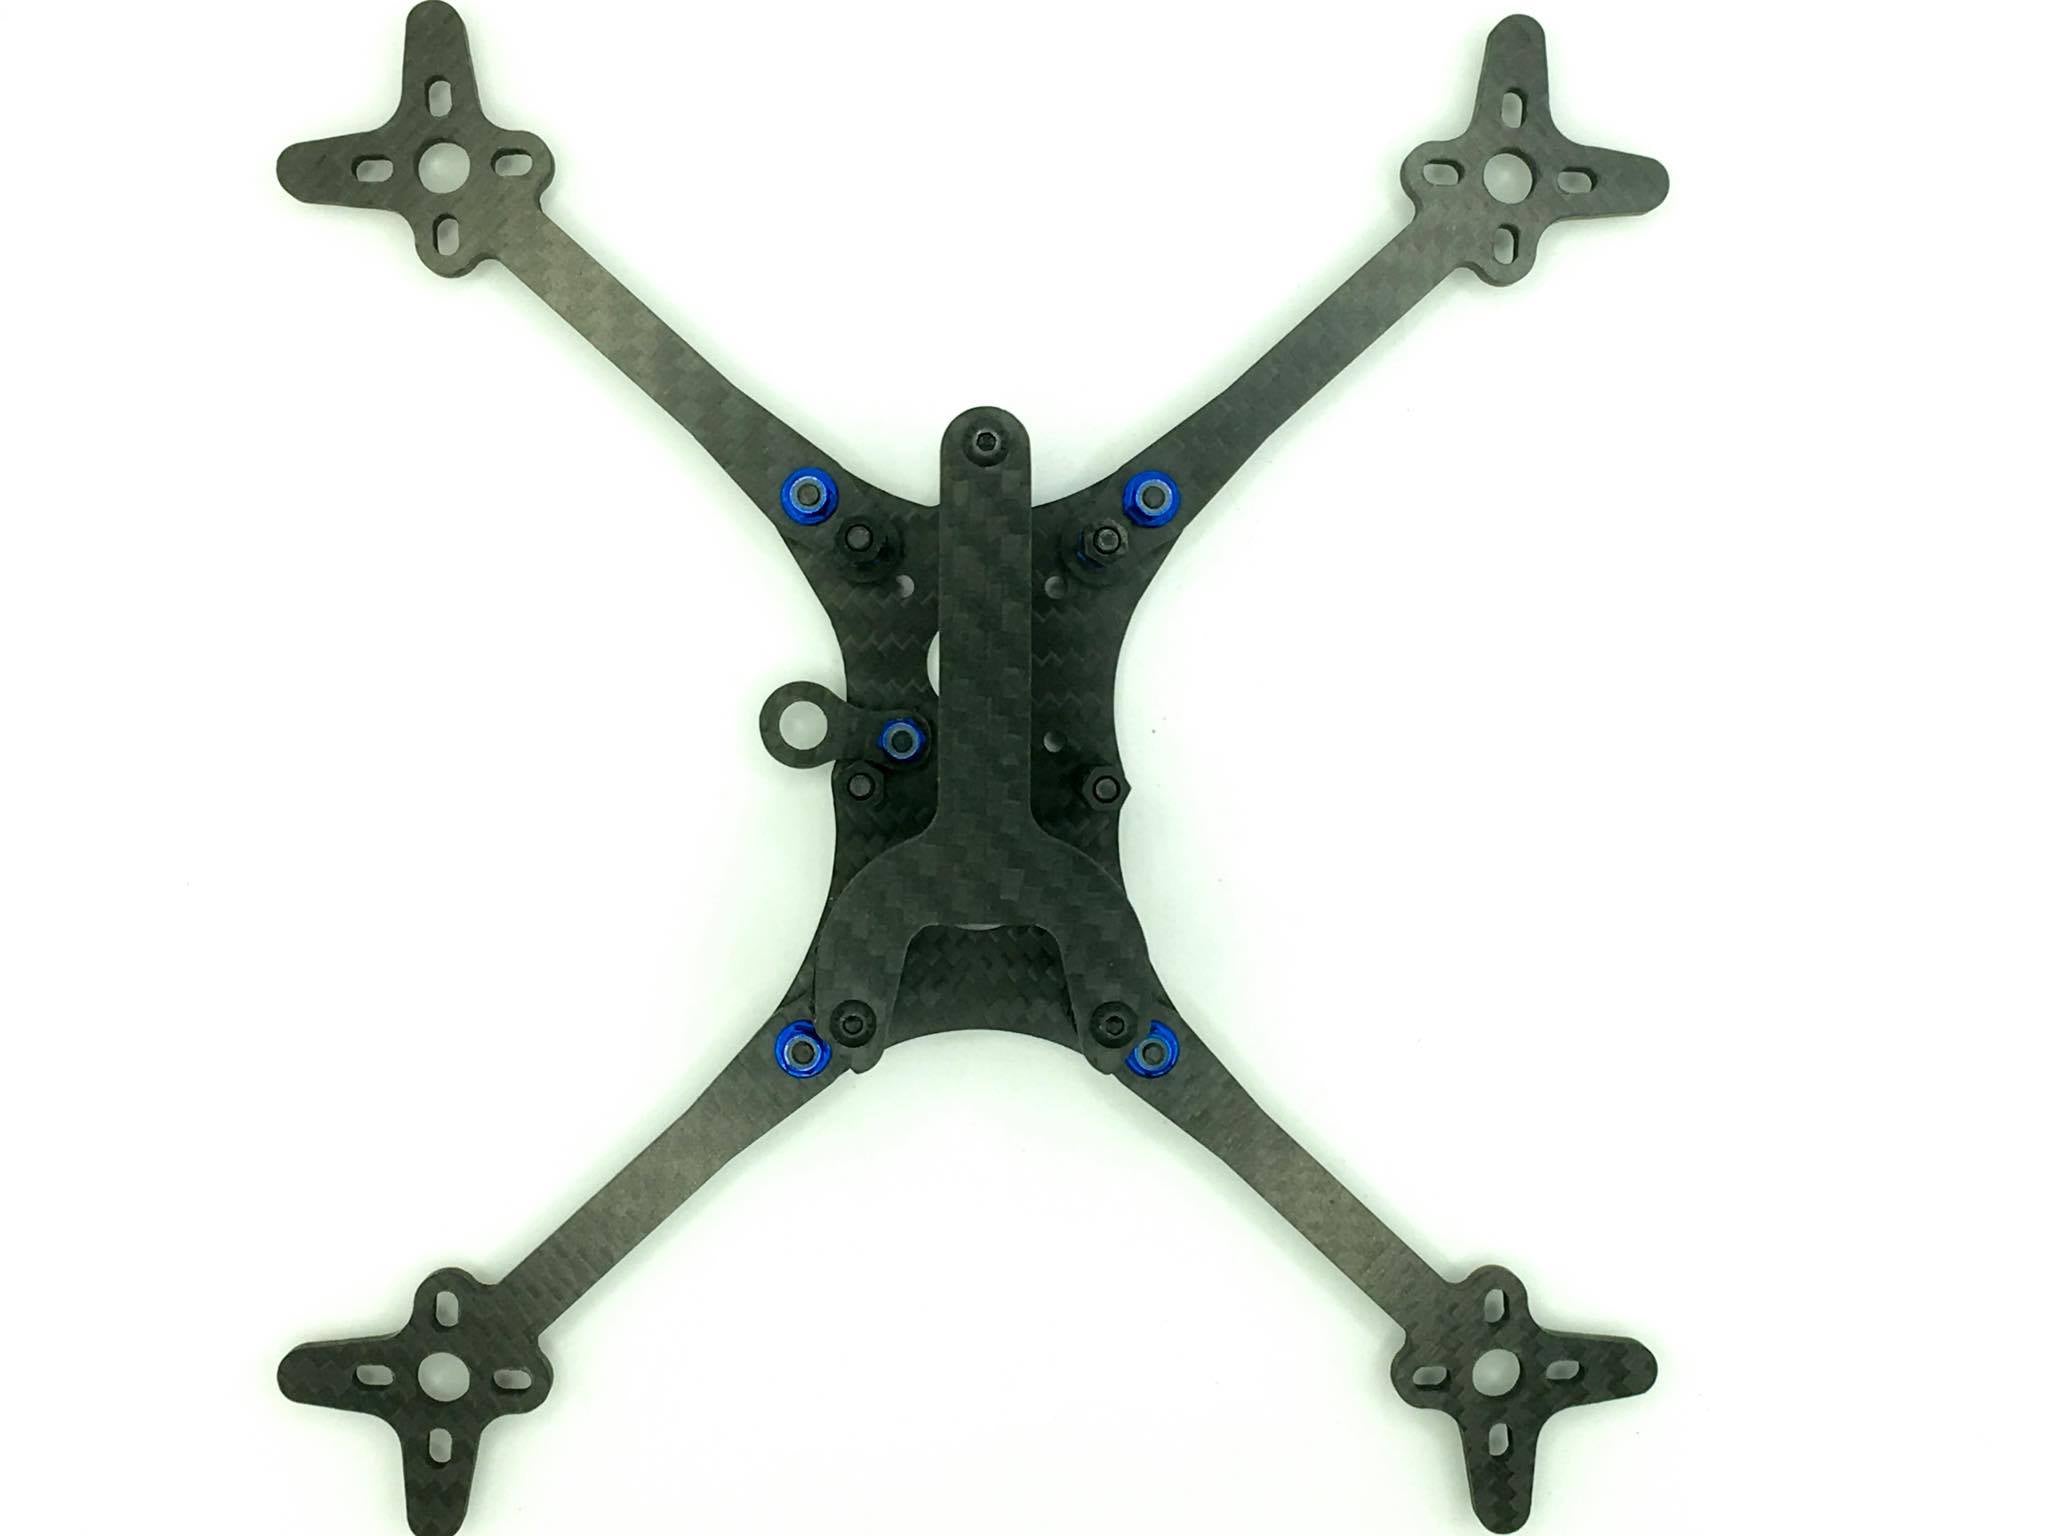 6 inch quadcopter frame